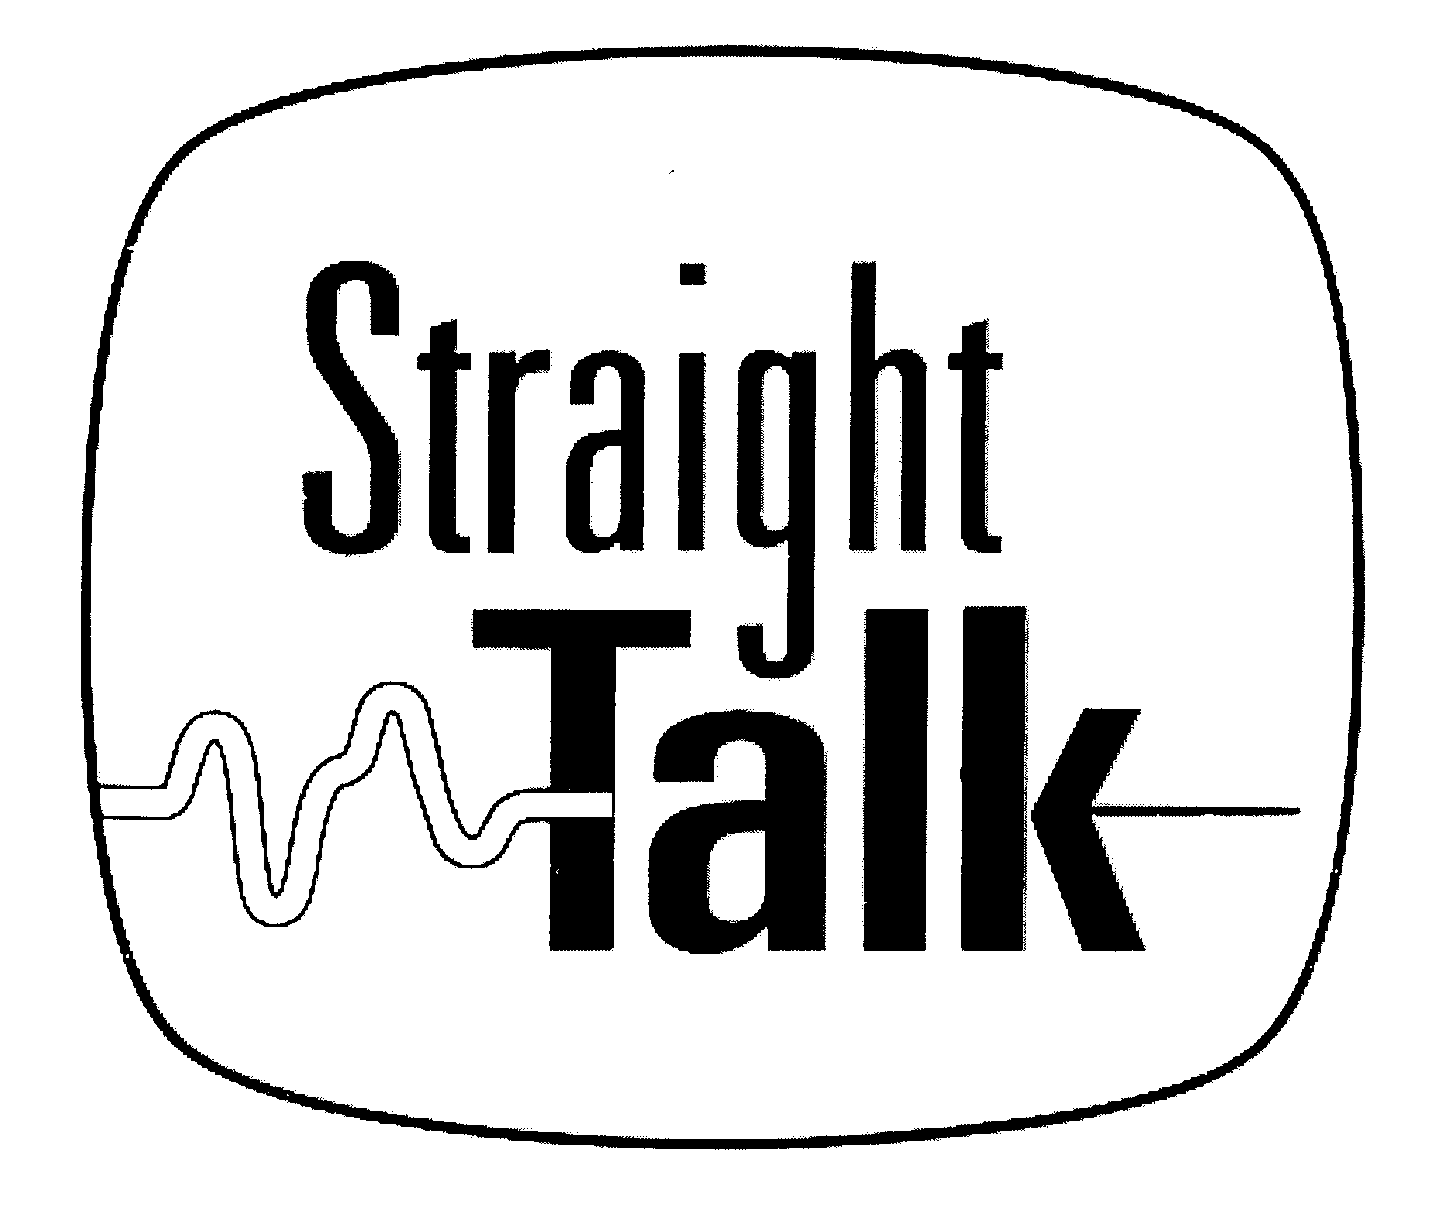 Trademark Logo STRAIGHT TALK